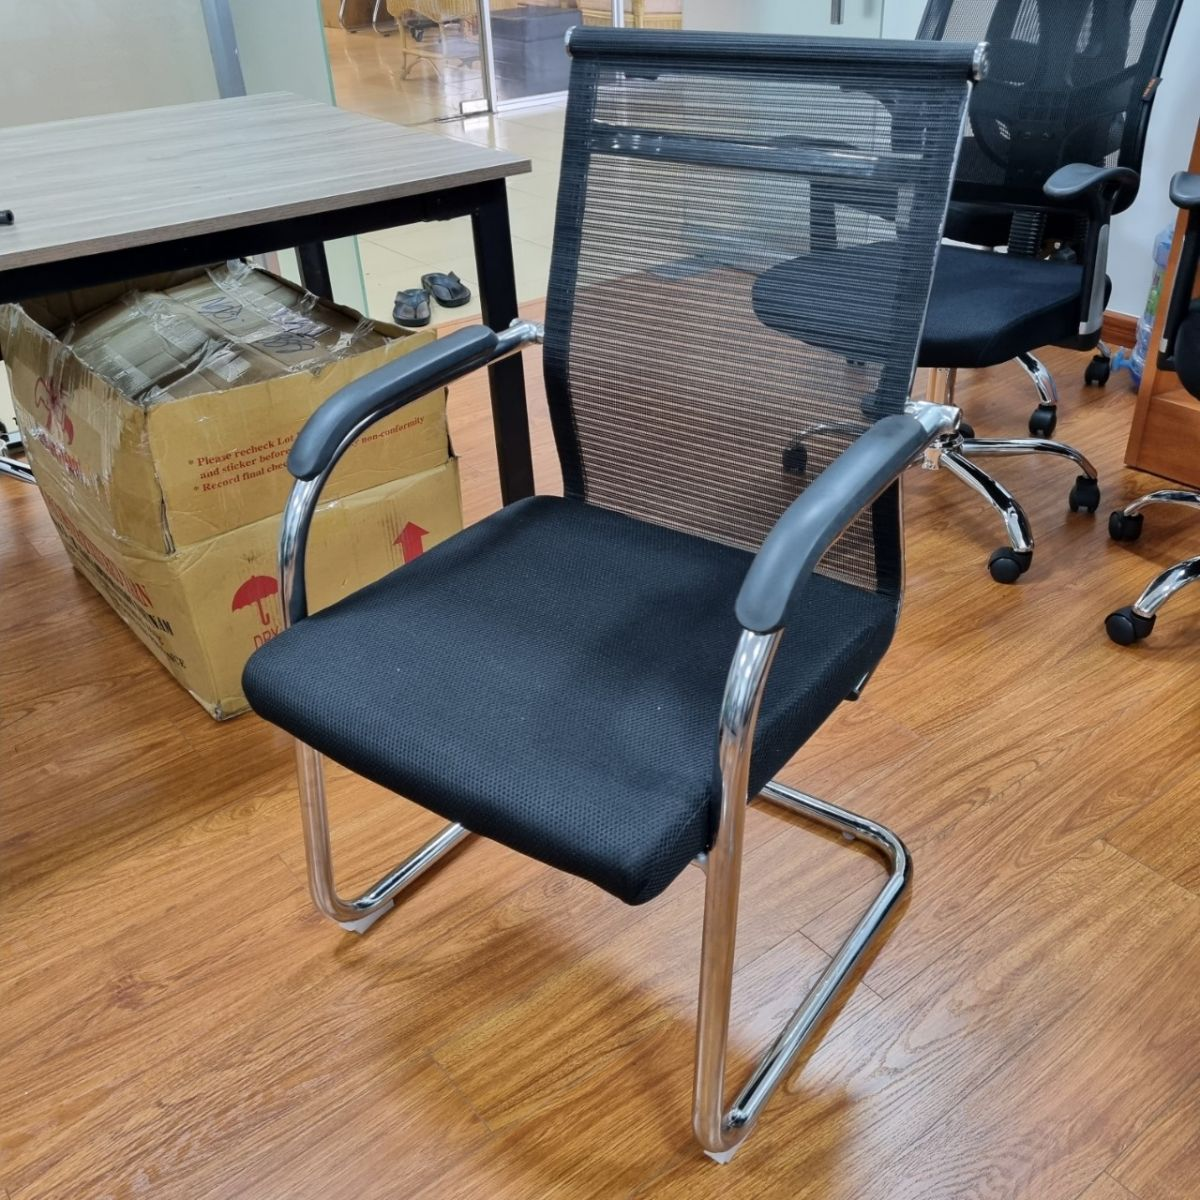 Ghế lưới chân quỳ được sử dụng khá phổ biến ở các văn phòng